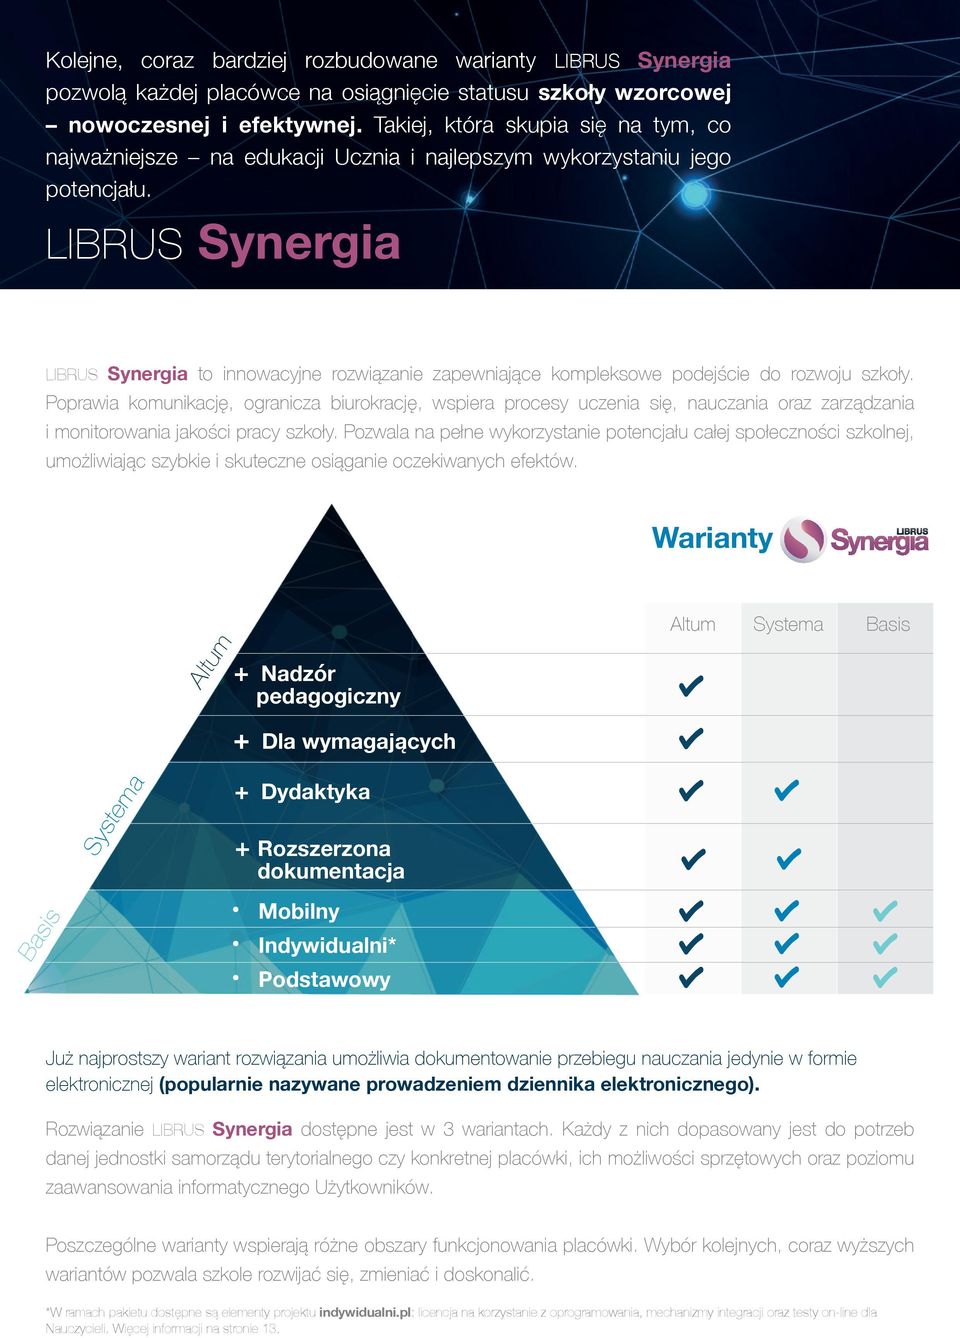 LIBRUS Synergia LIBRUS Synergia to innowacyjne rozwiązanie zapewniające kompleksowe podejście do rozwoju szkoły.